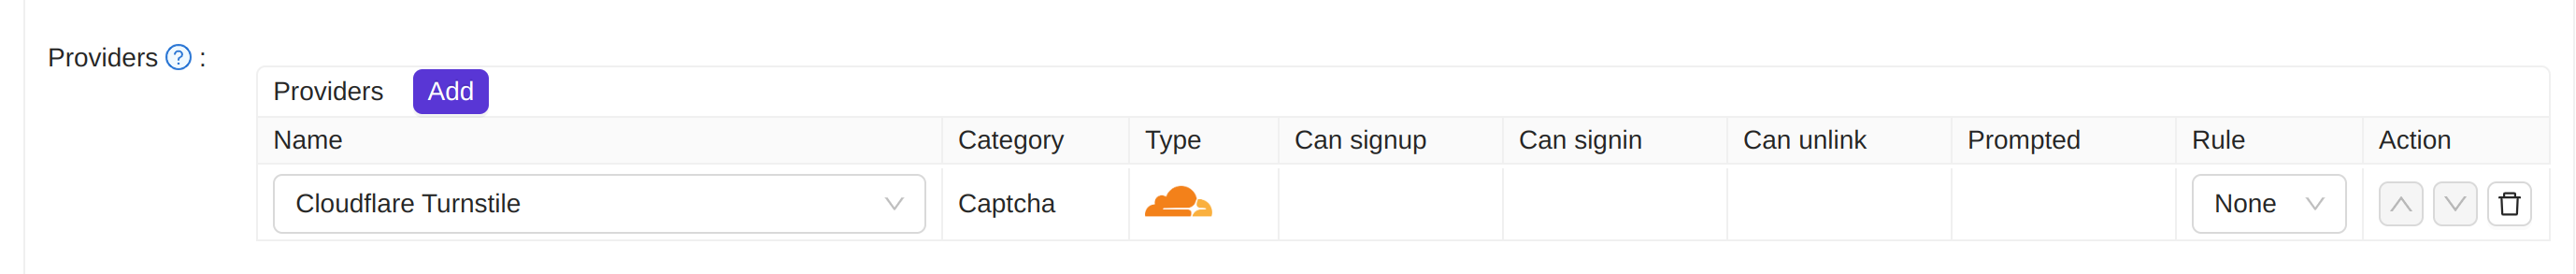 Приложение-провайдер Cloudflare Turnstile